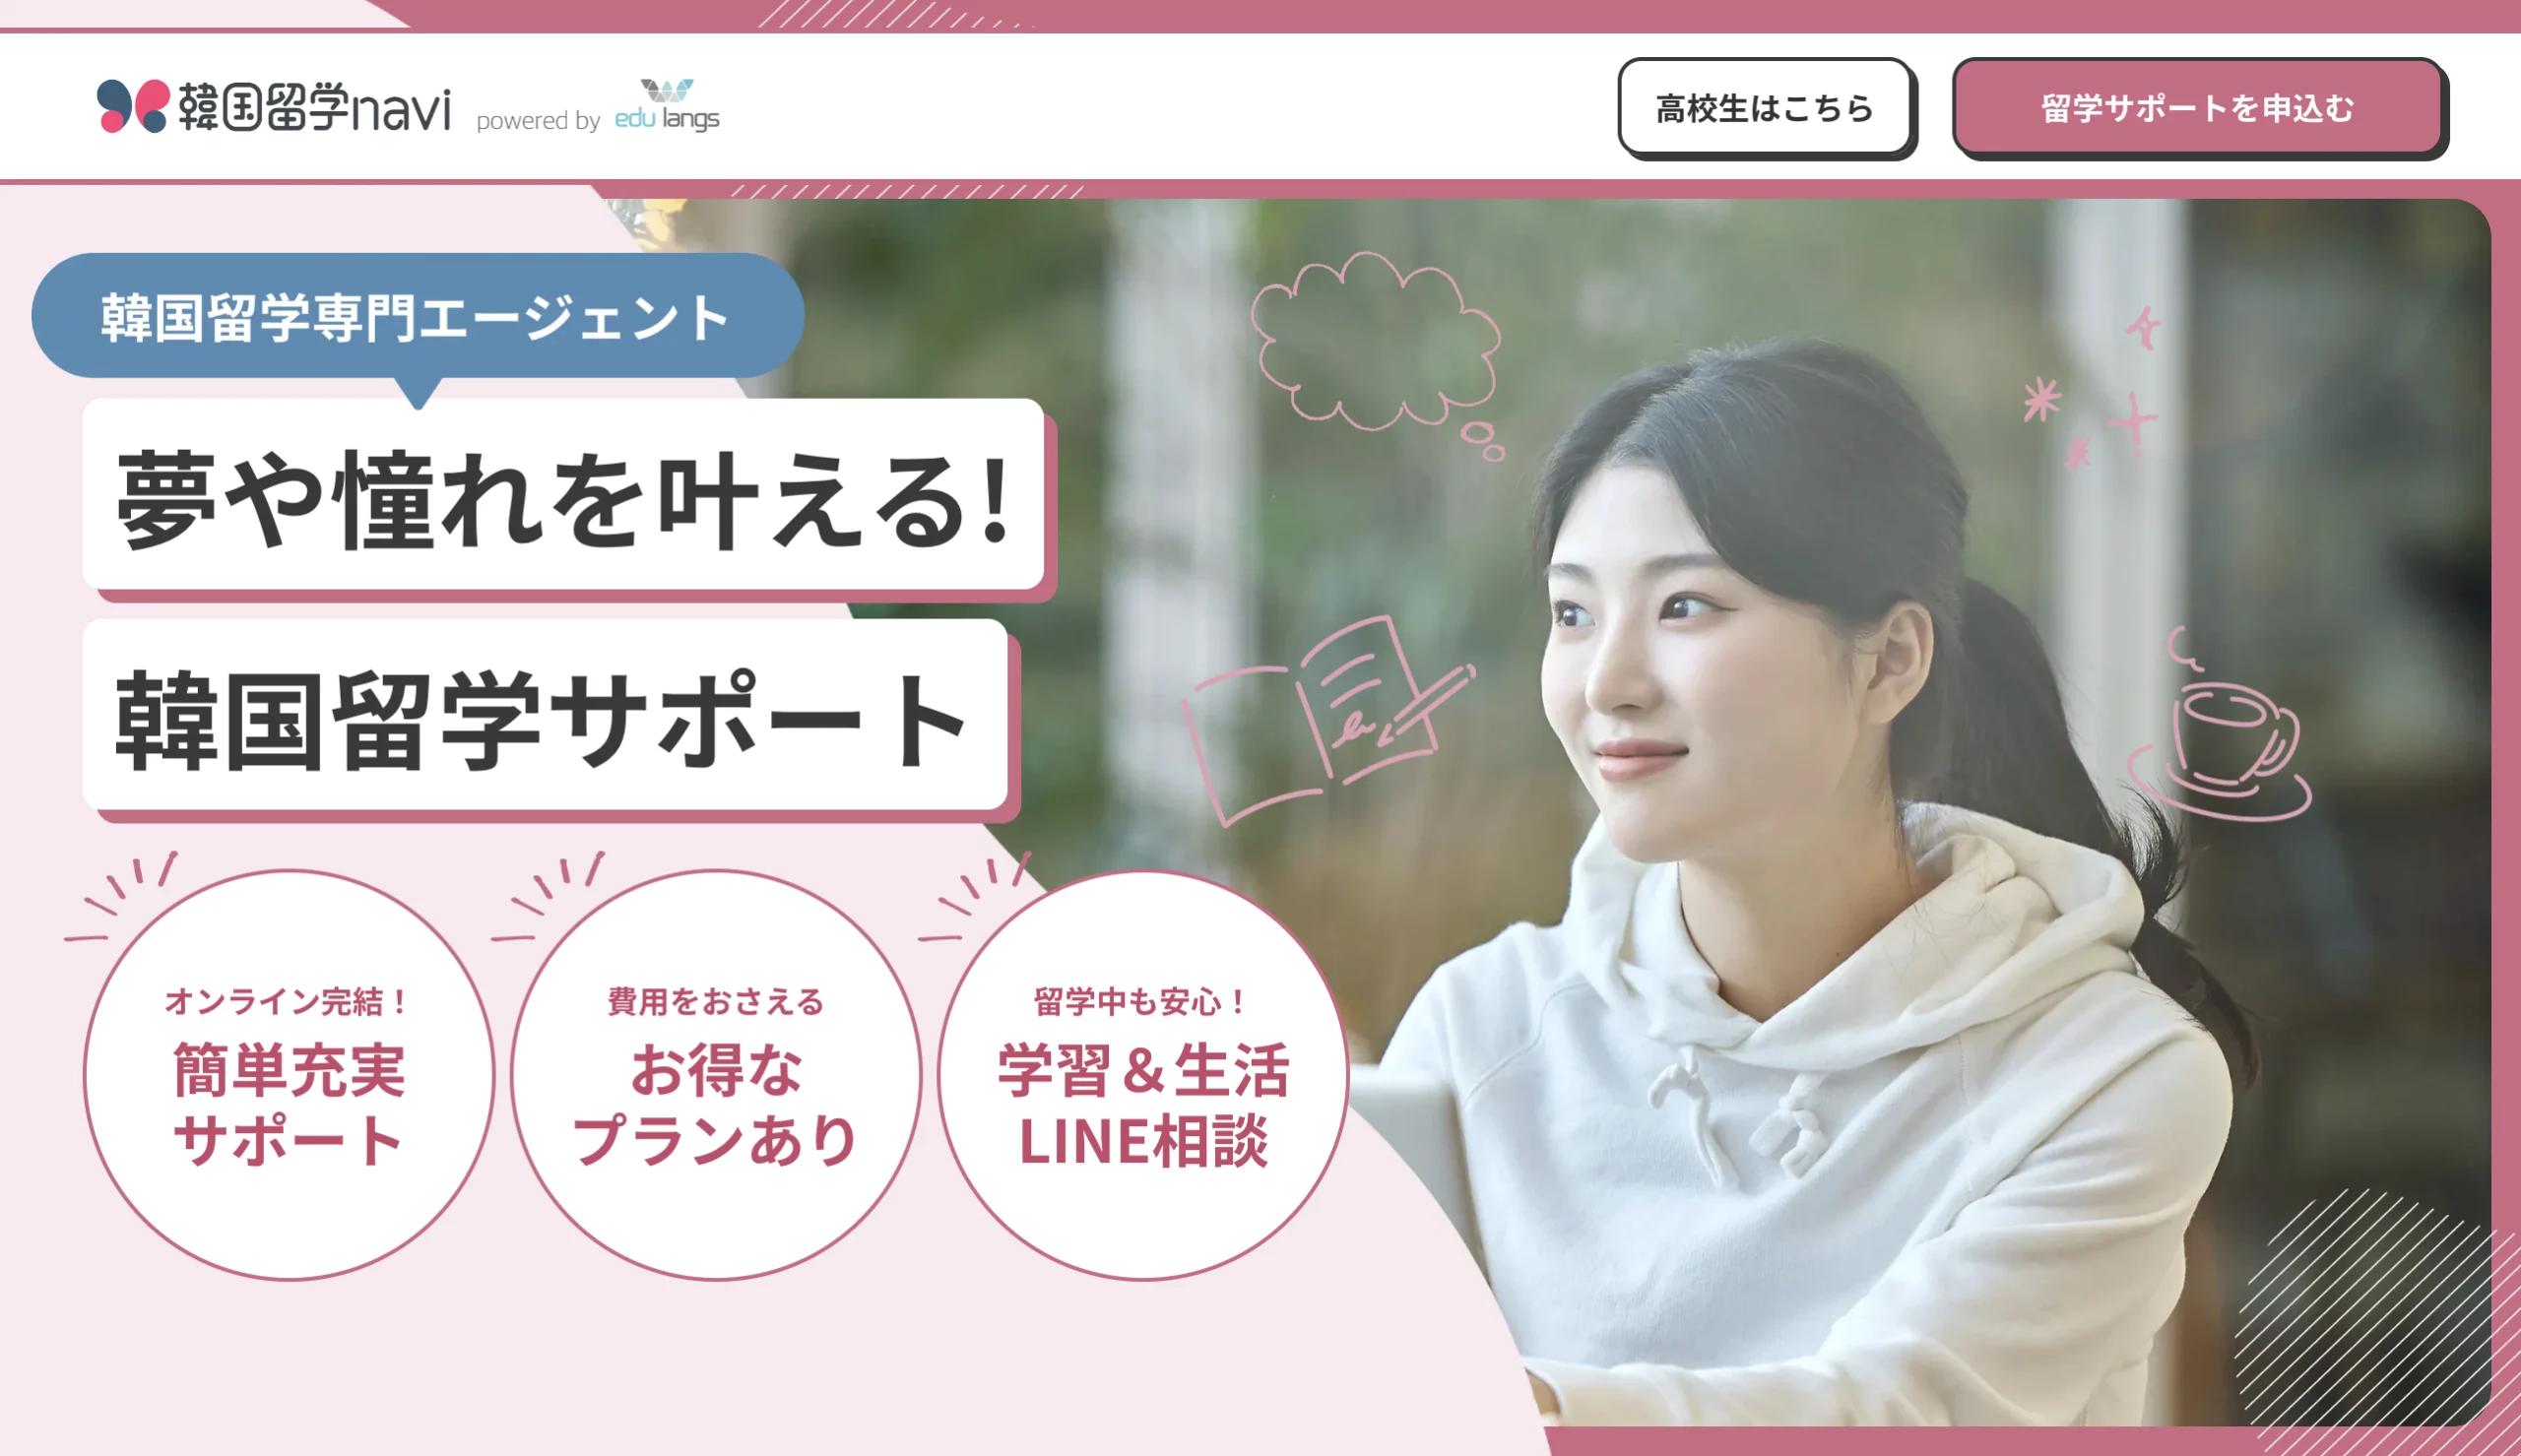 韓国留学エージェントnaviの公式サイトTOP画面